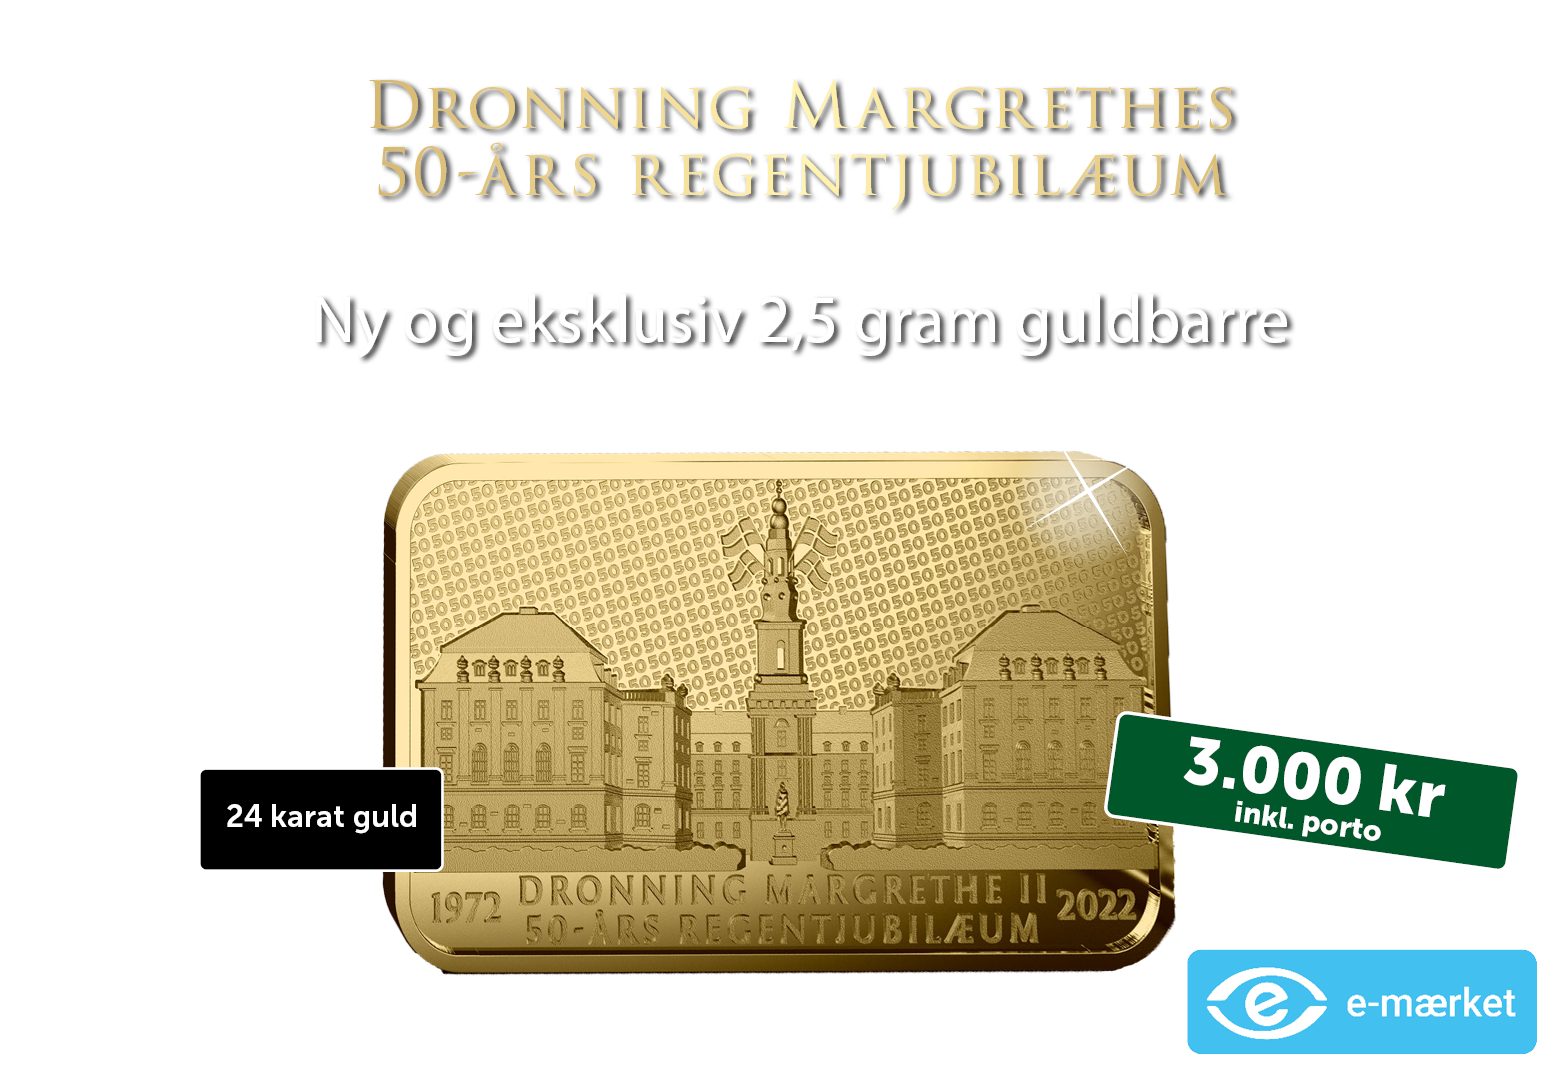 Dronning Margrethe 50-års regentjubilæum 2,5 gram guldbarre (2021)